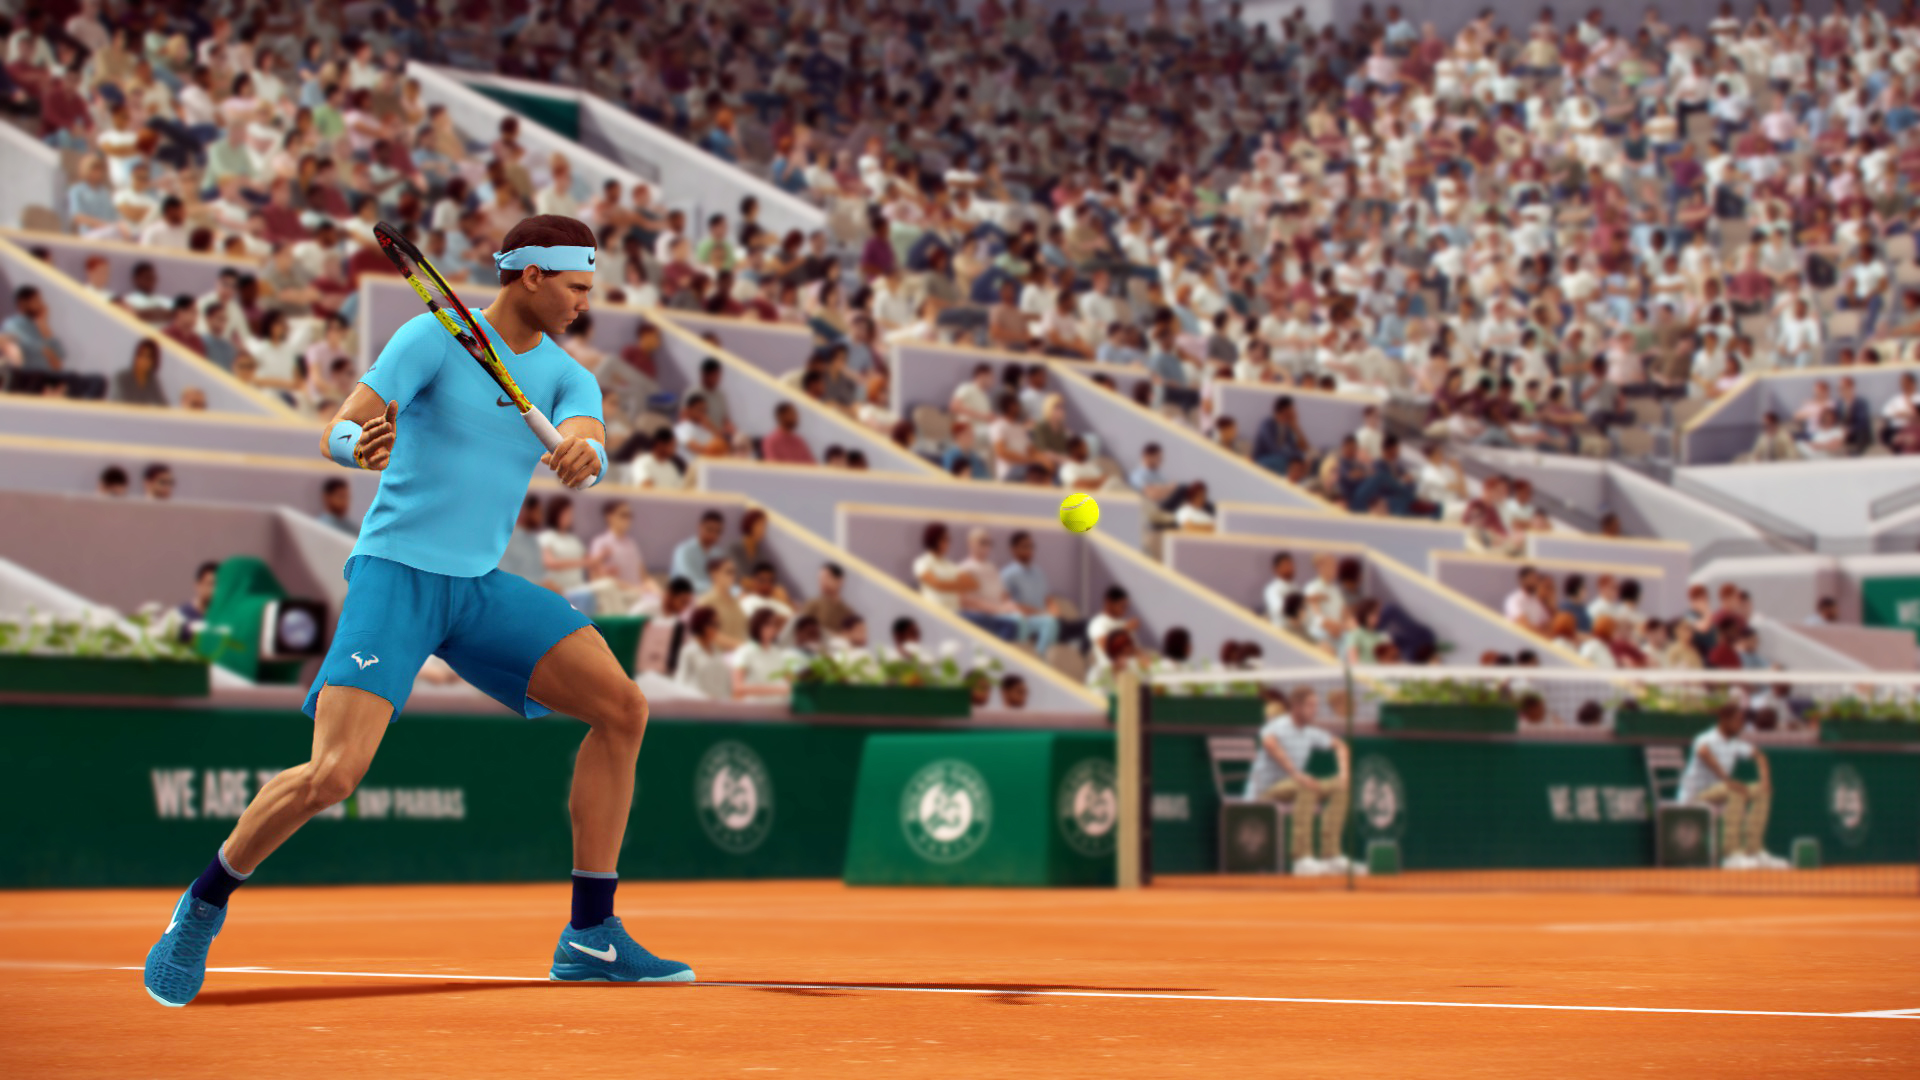 tennis world tour roland garros edition gameplay